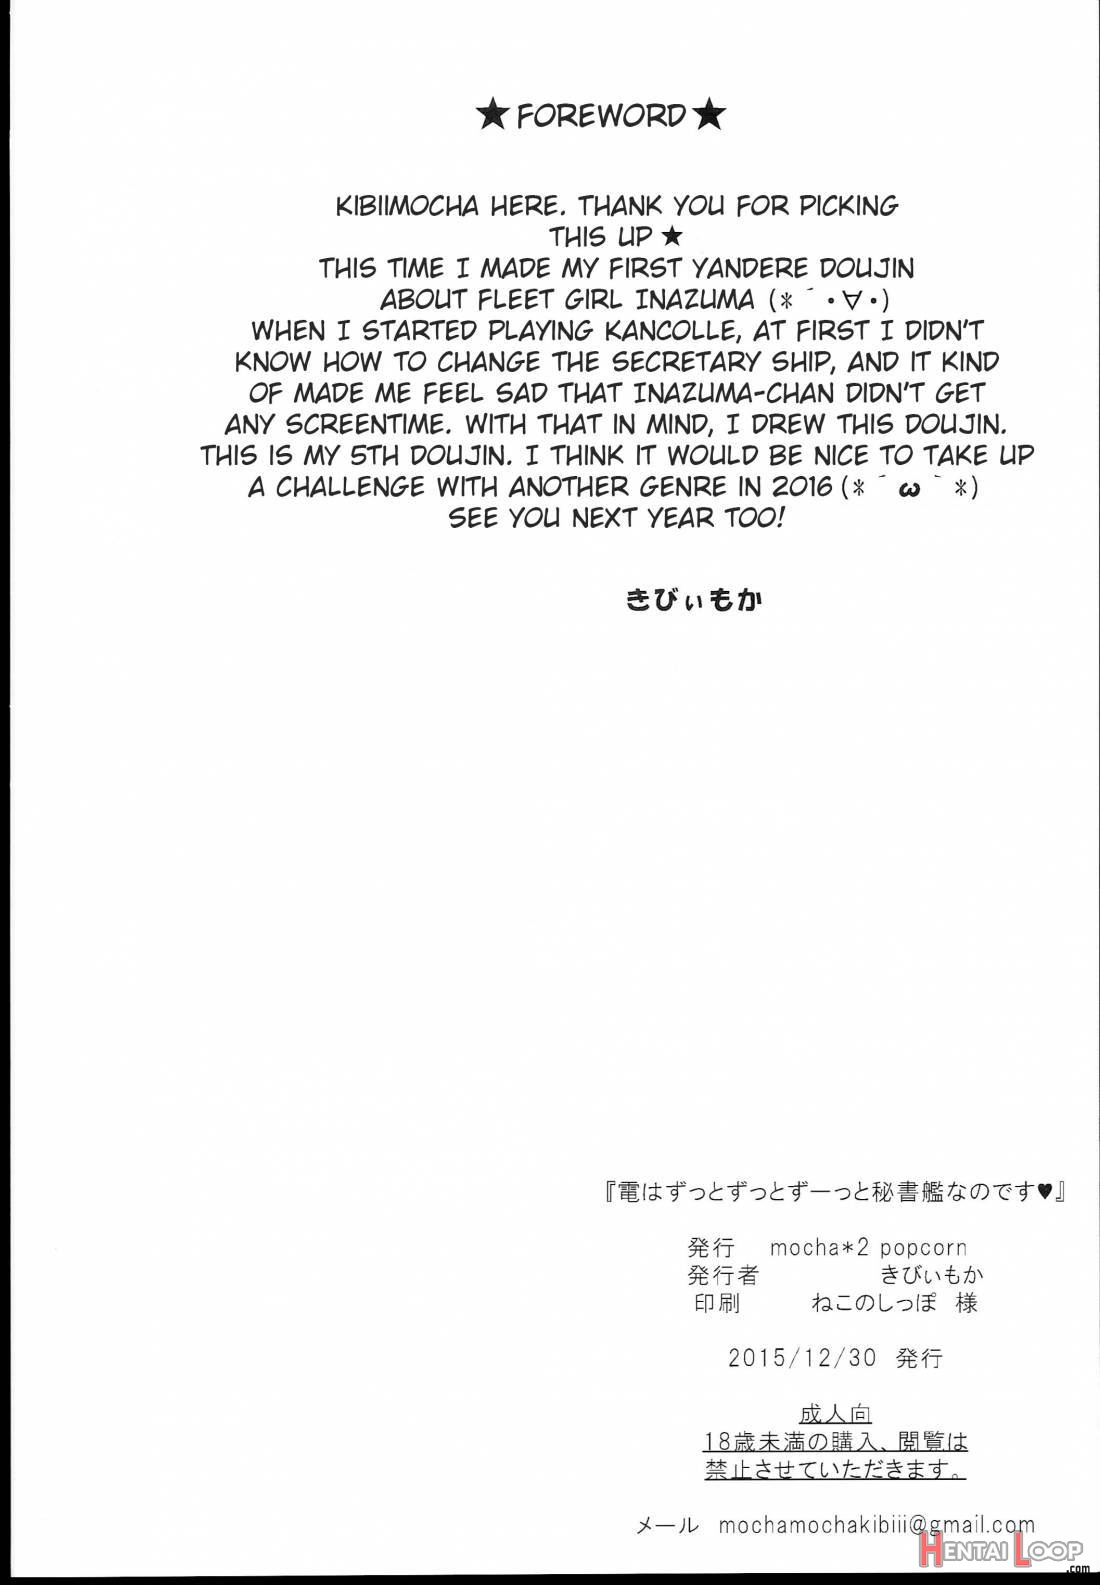 Inazuma wa Zutto Zutto Zutto Shireikan no Hishokan nano desu page 2